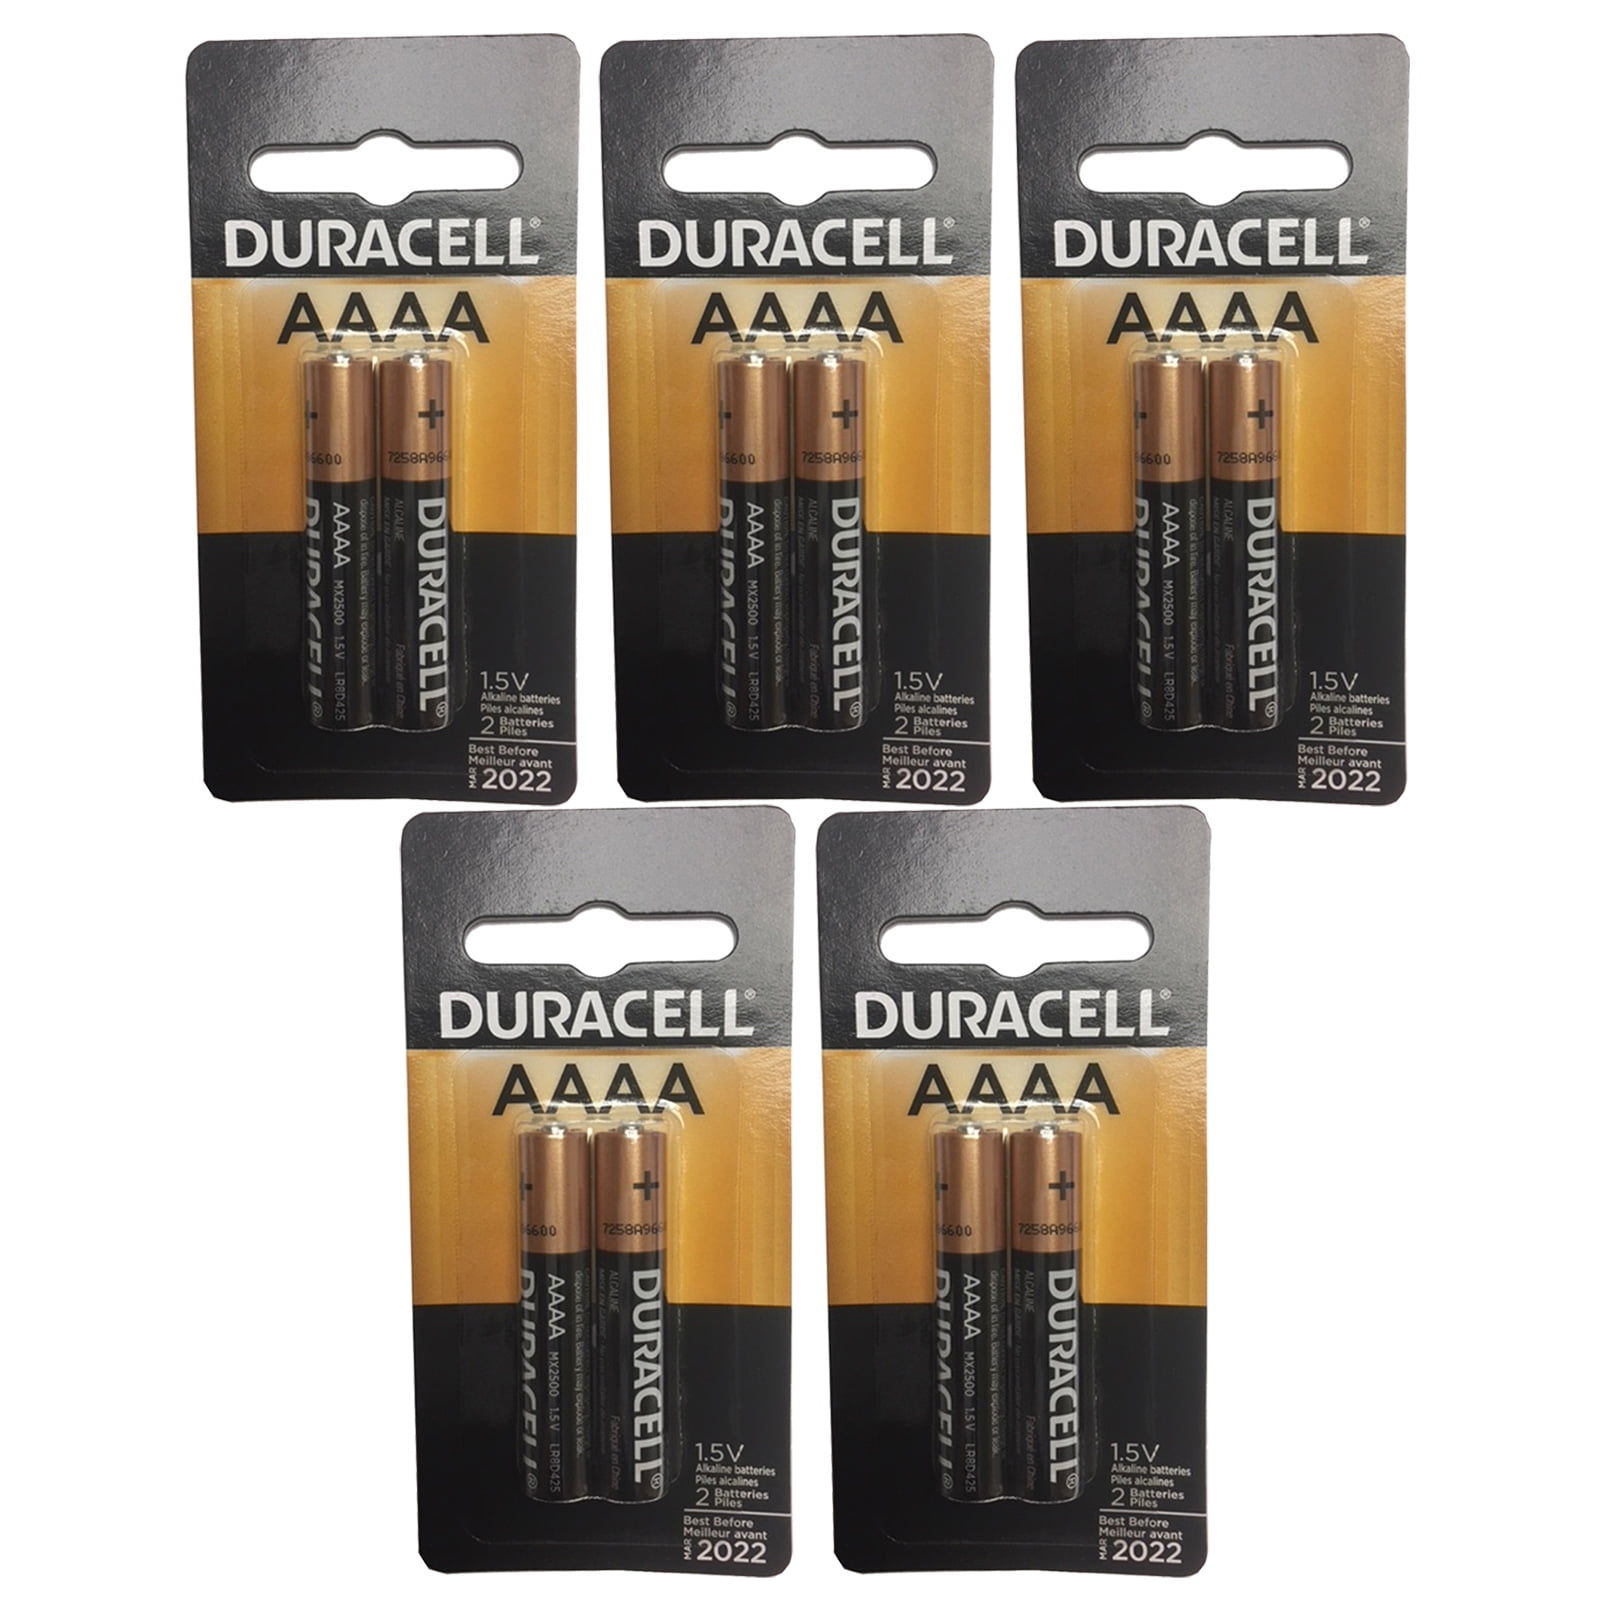 5x Duracell Ultra AAAA Alkaline Batteries 1.5V MX2500 LR61 